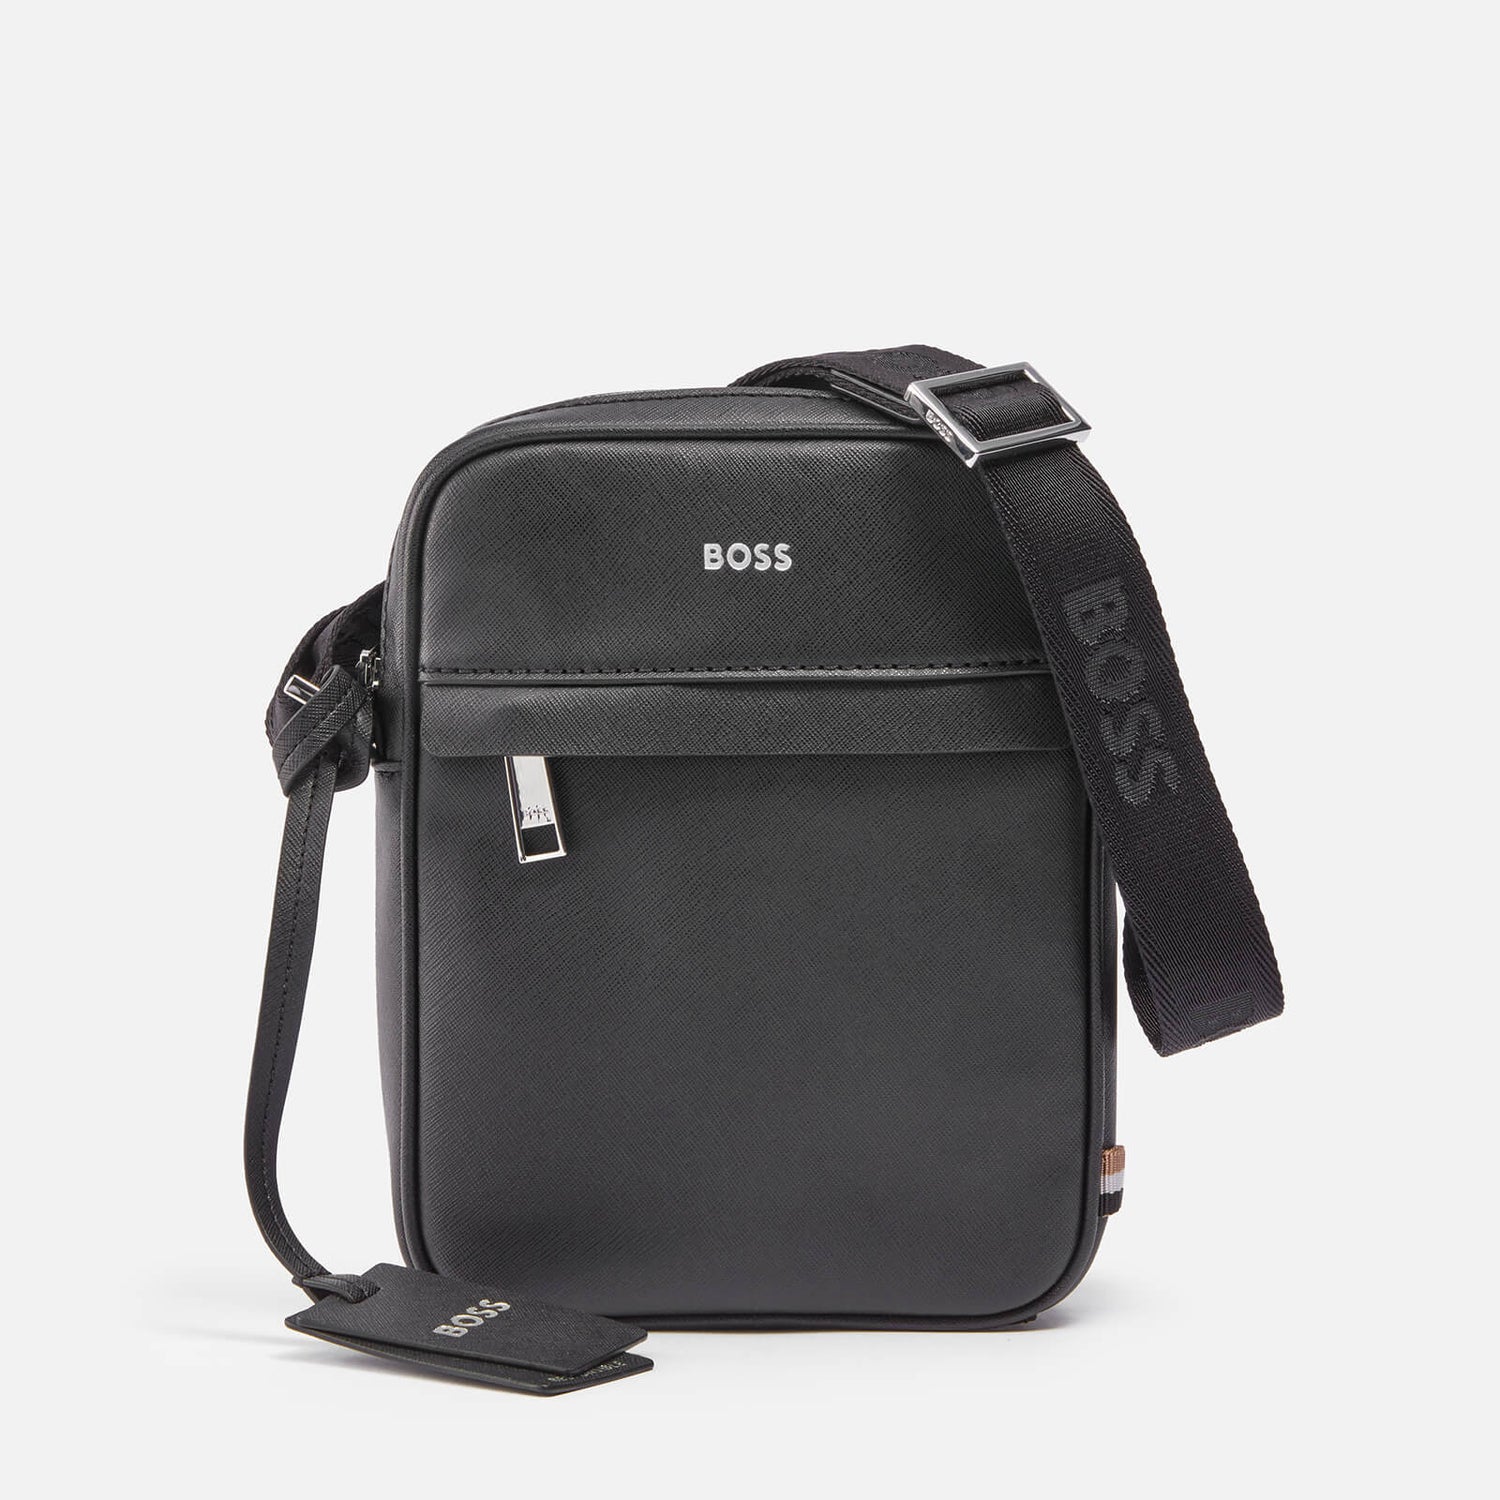 BOSS Zair Regenerated Leather Crossbody Bag | TheHut.com